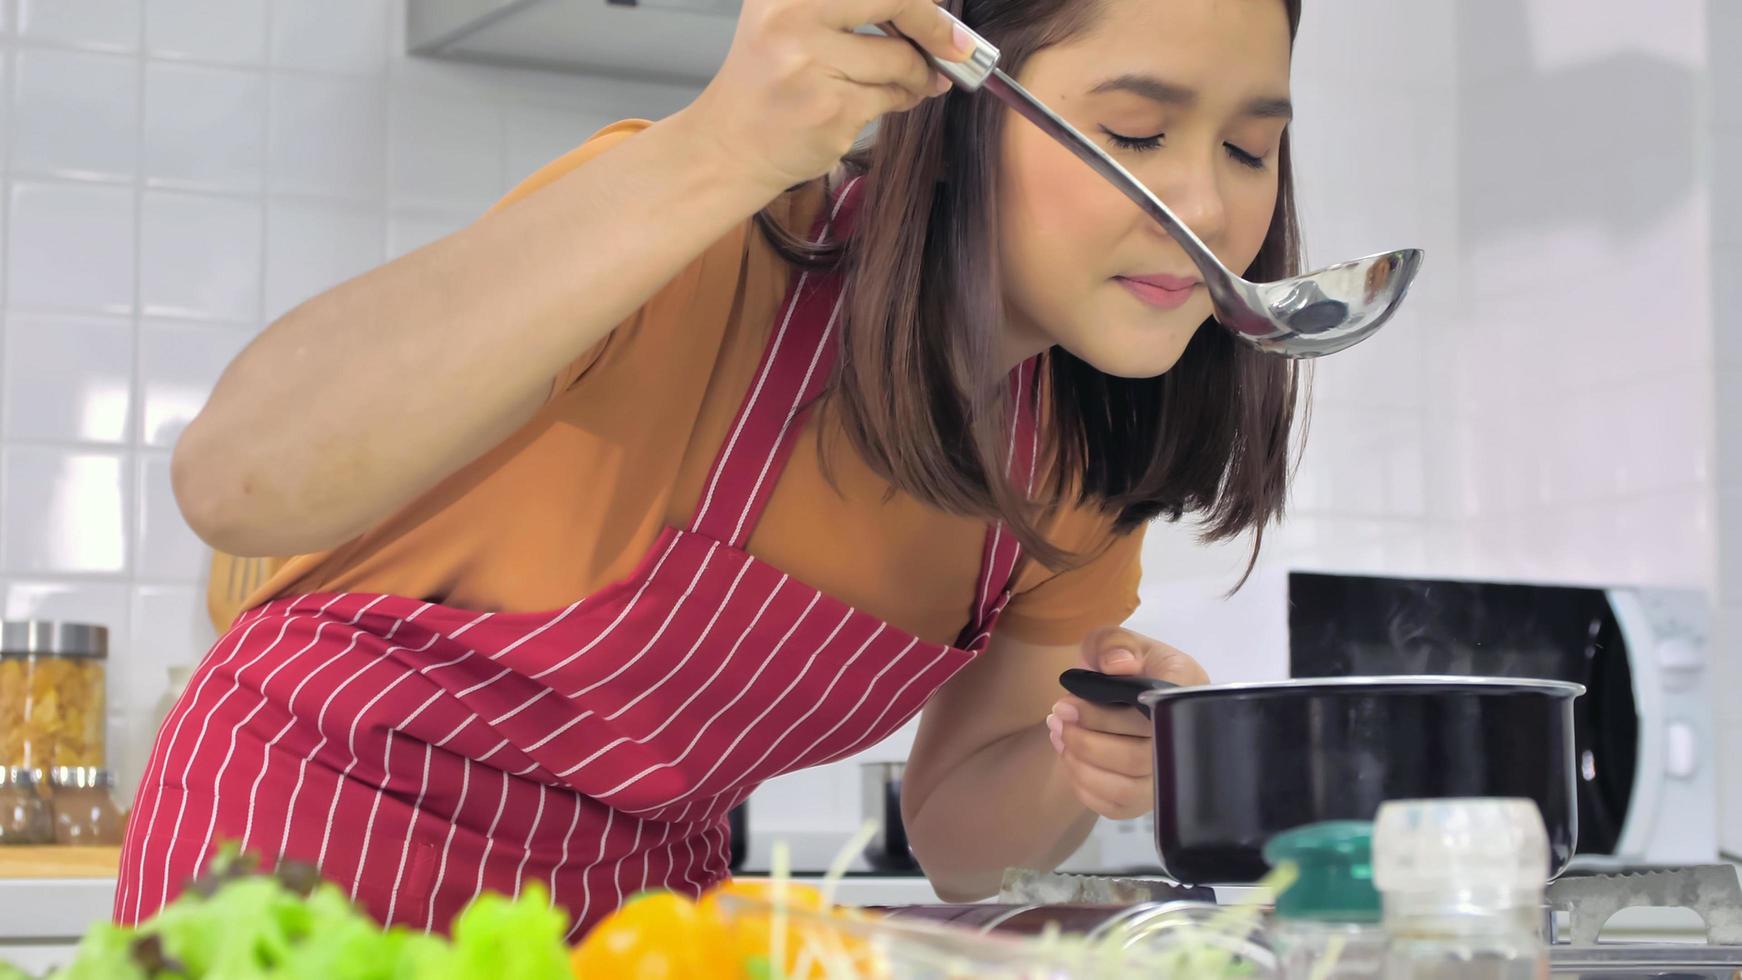 ung asiatisk kvinna matlagning i kök på Hem. foto